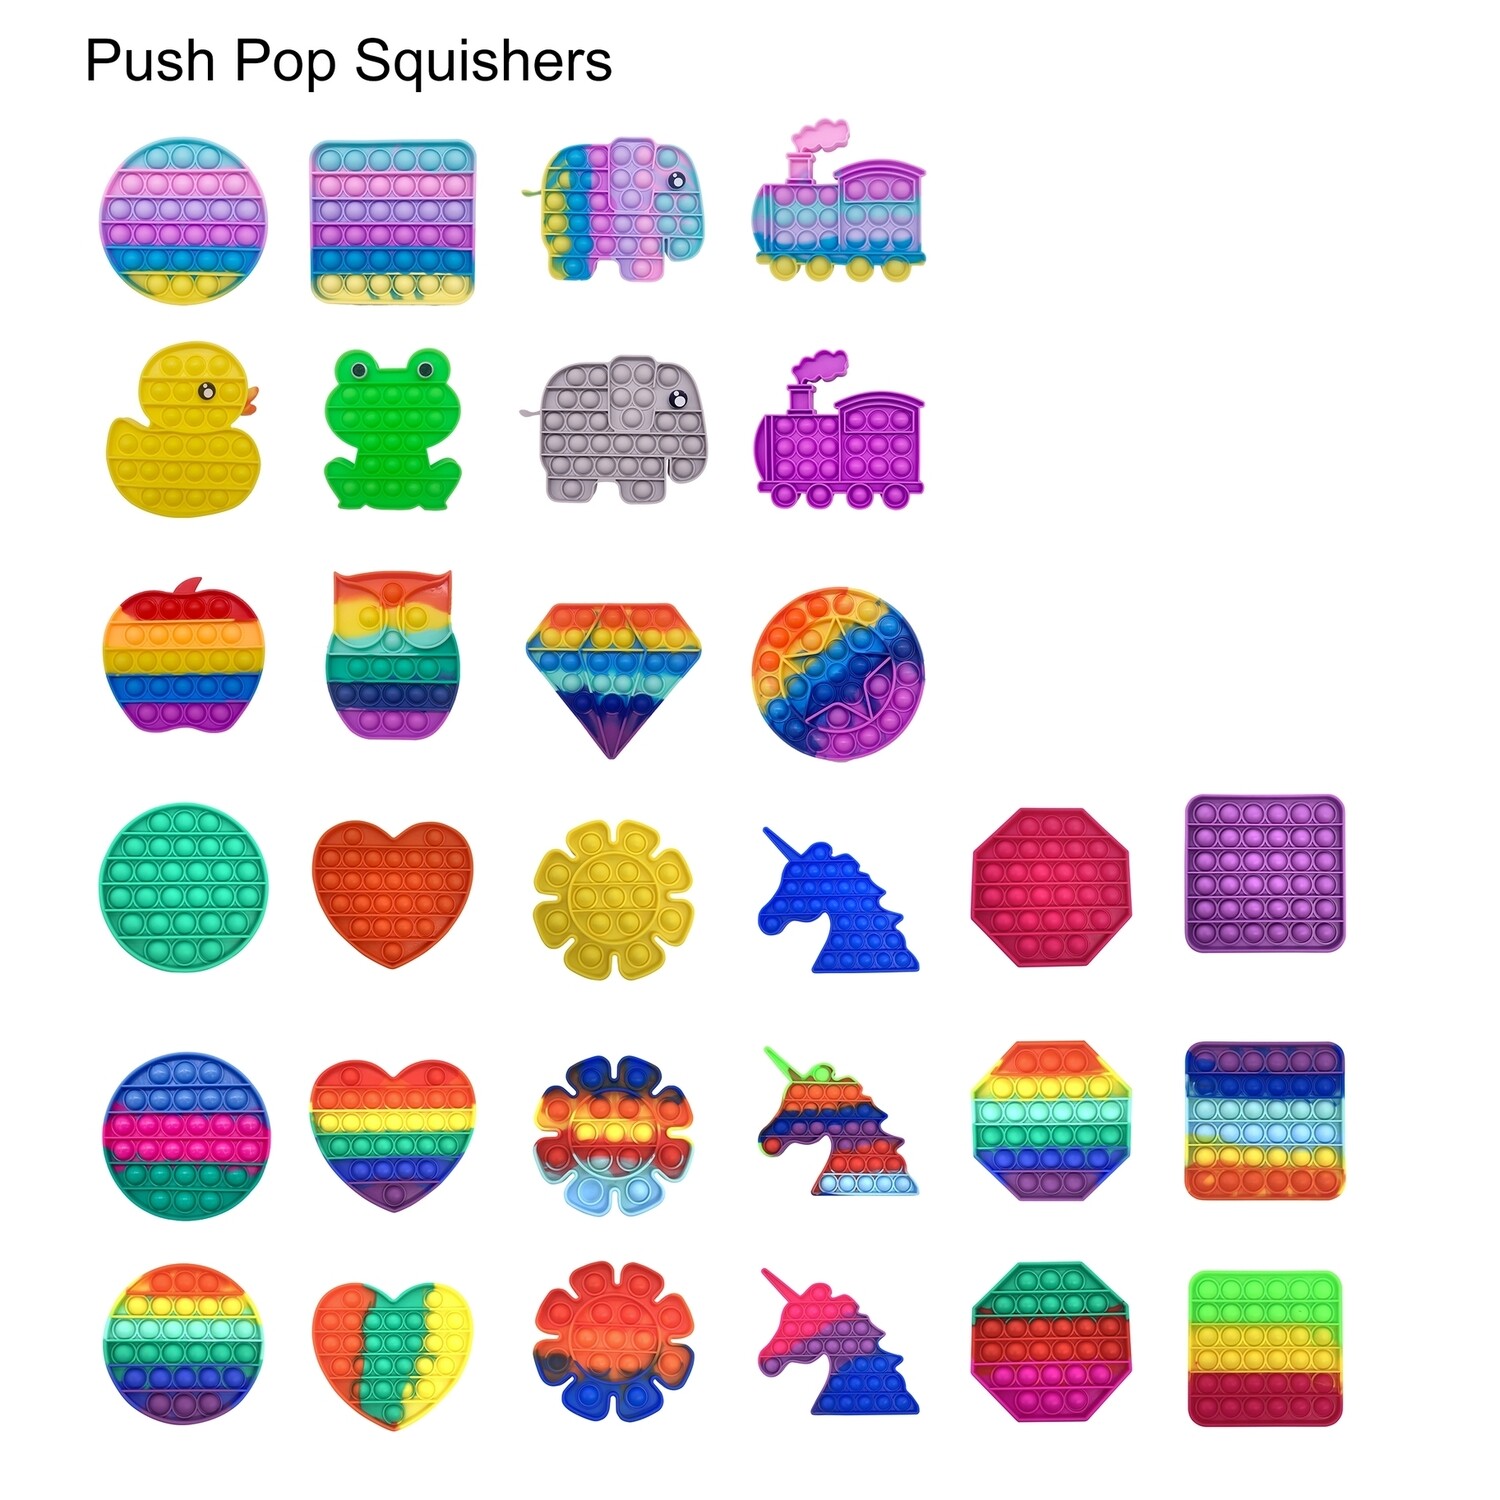 Push Pop Squishers